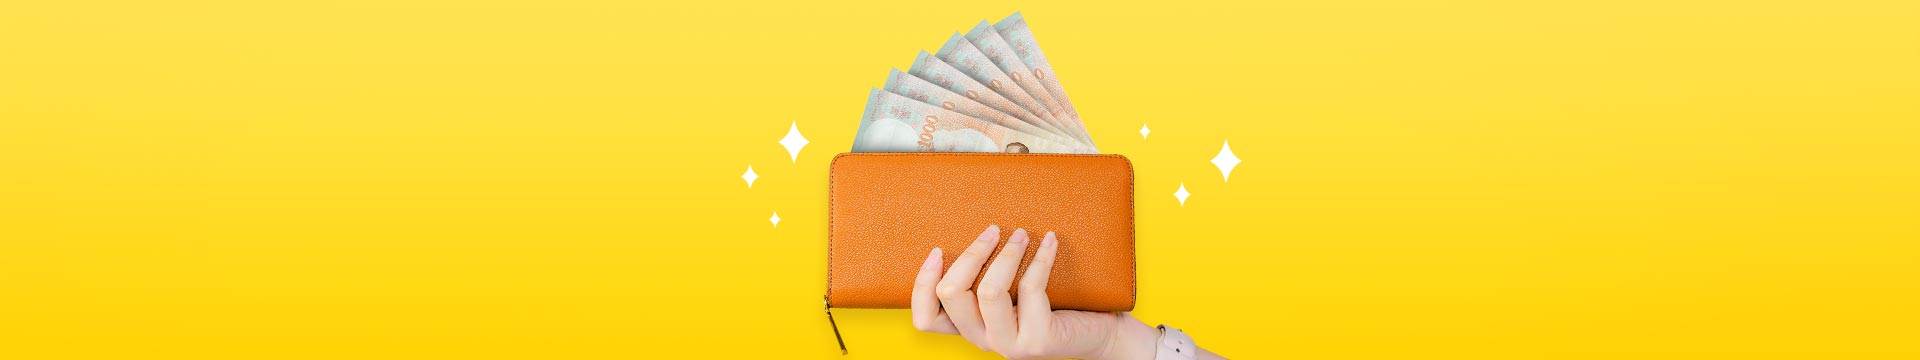 มูให้สุด ด้วย “กระเป๋าเงินเหนี่ยวทรัพย์” ใช้แบบไหนถึงจะรวย